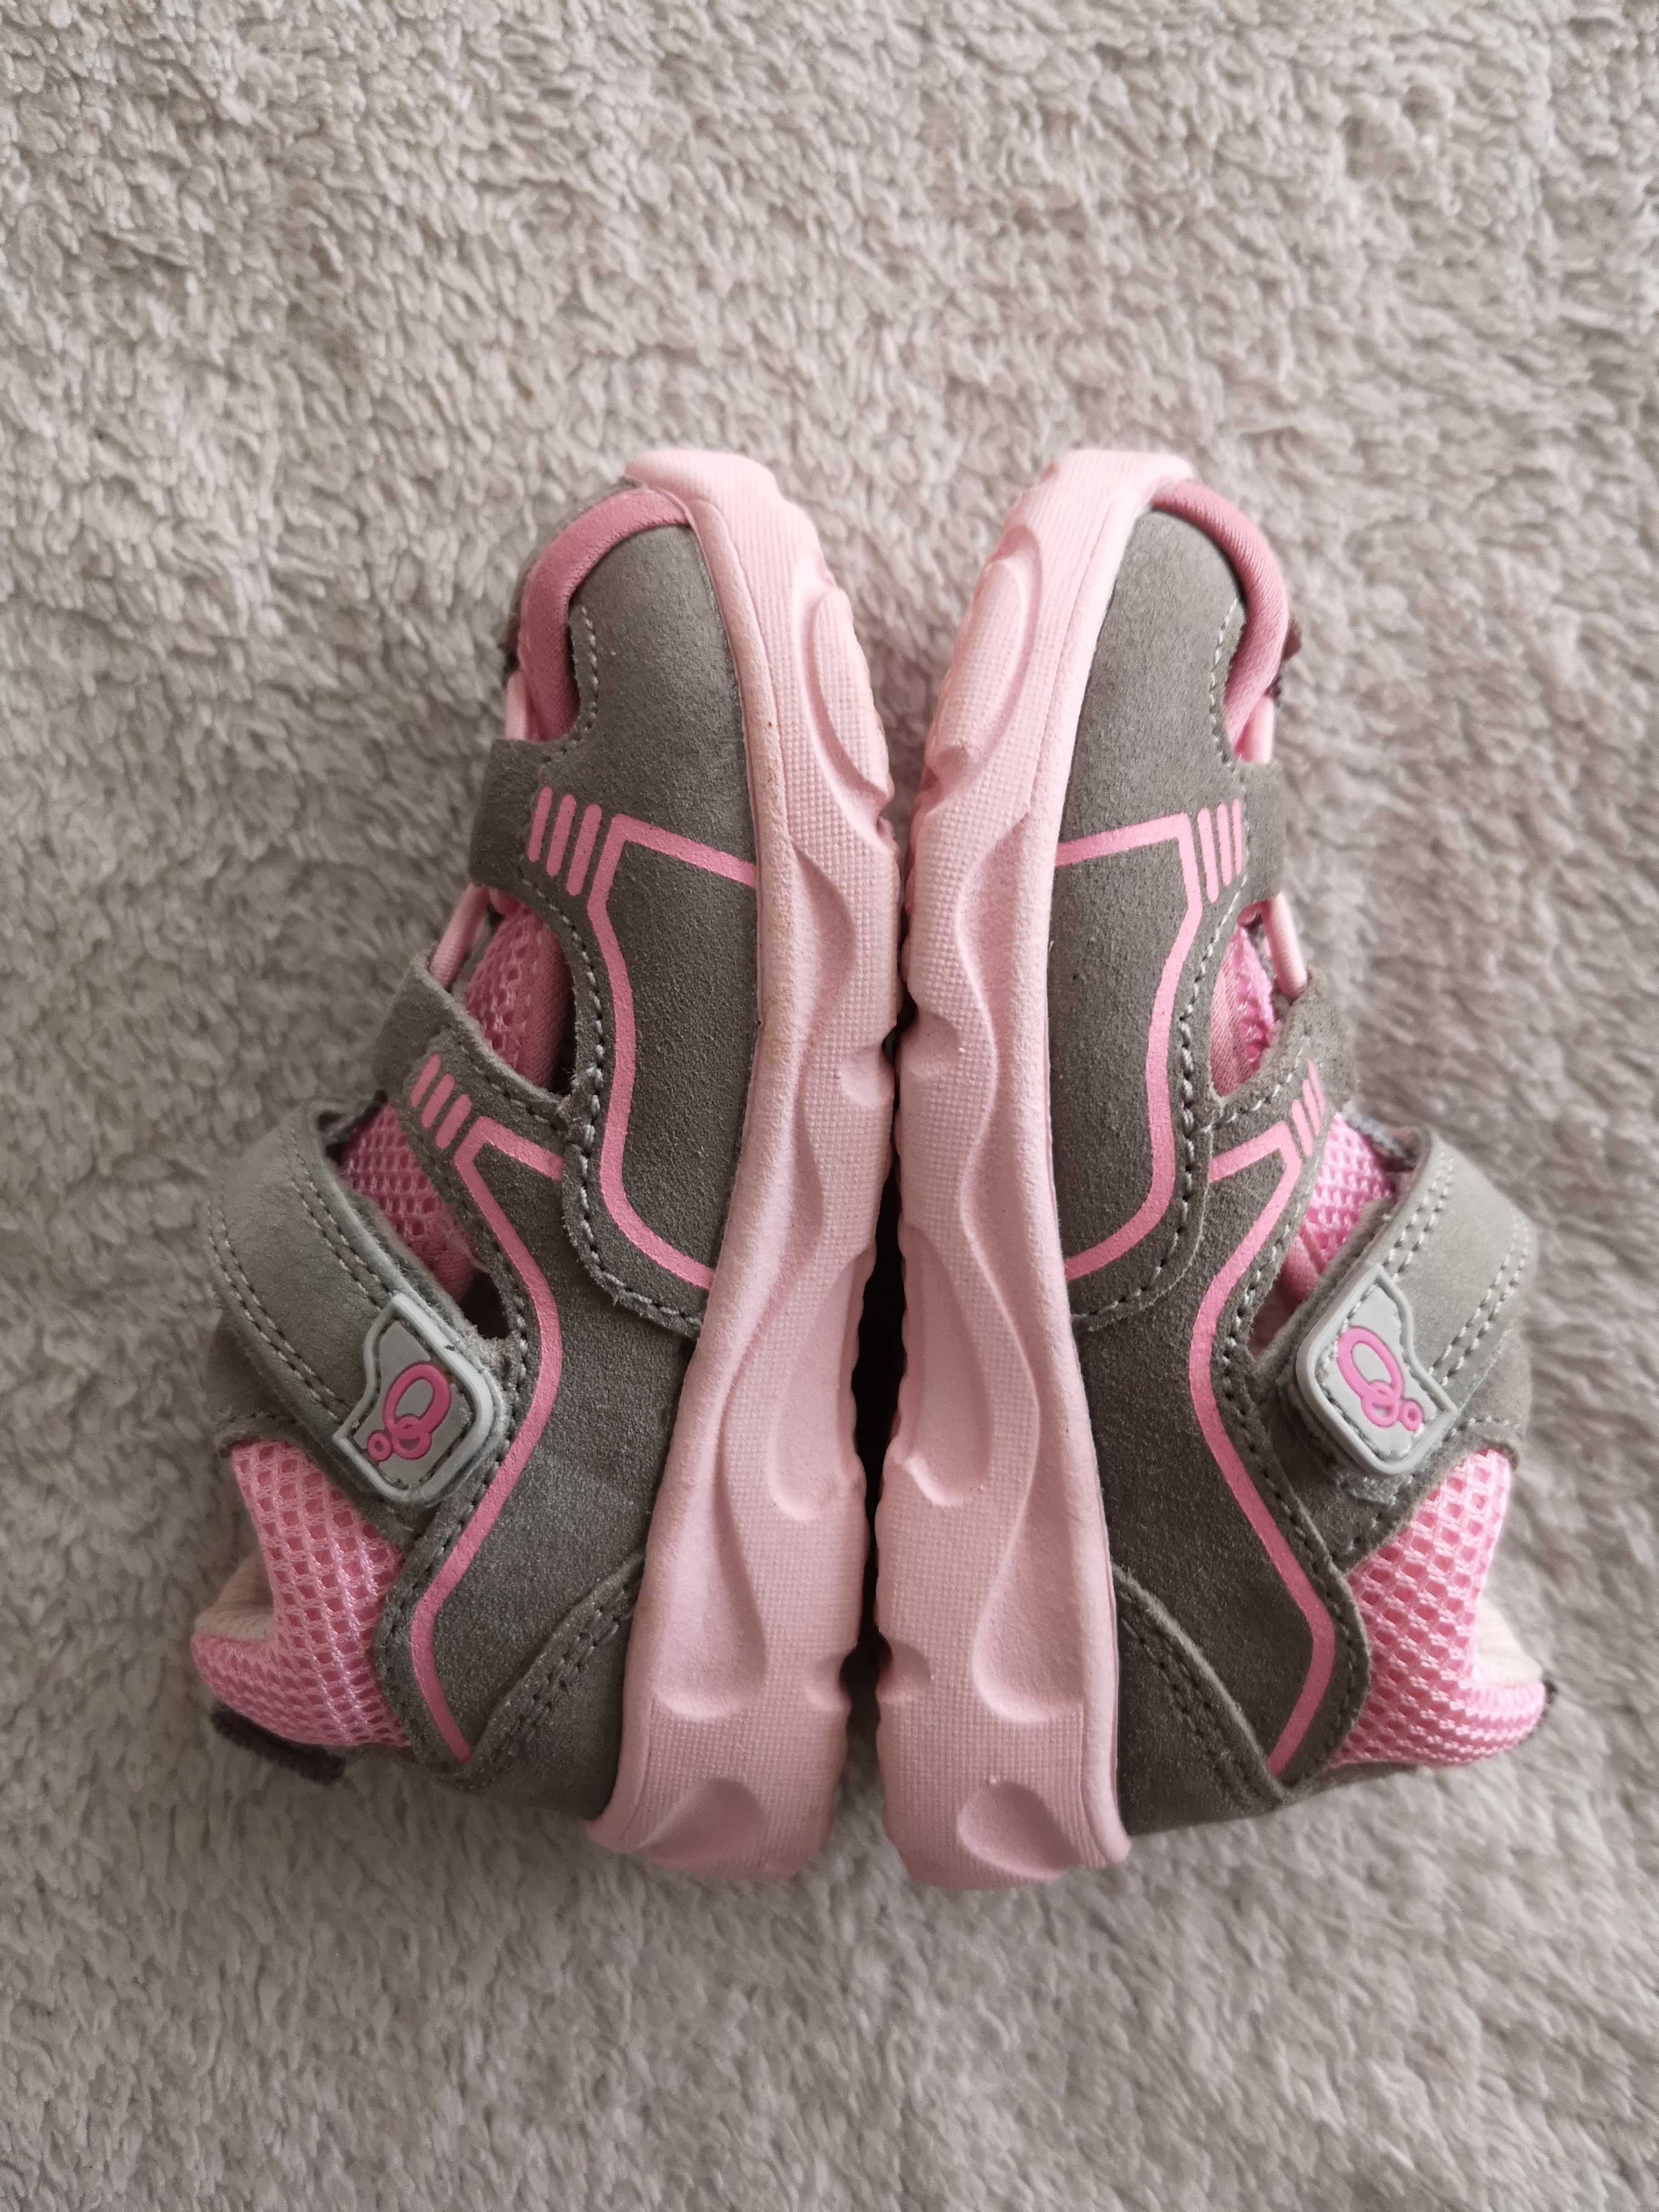 Szare różowe skórzane buty sportowe sandały Lamino 21 jak nowe